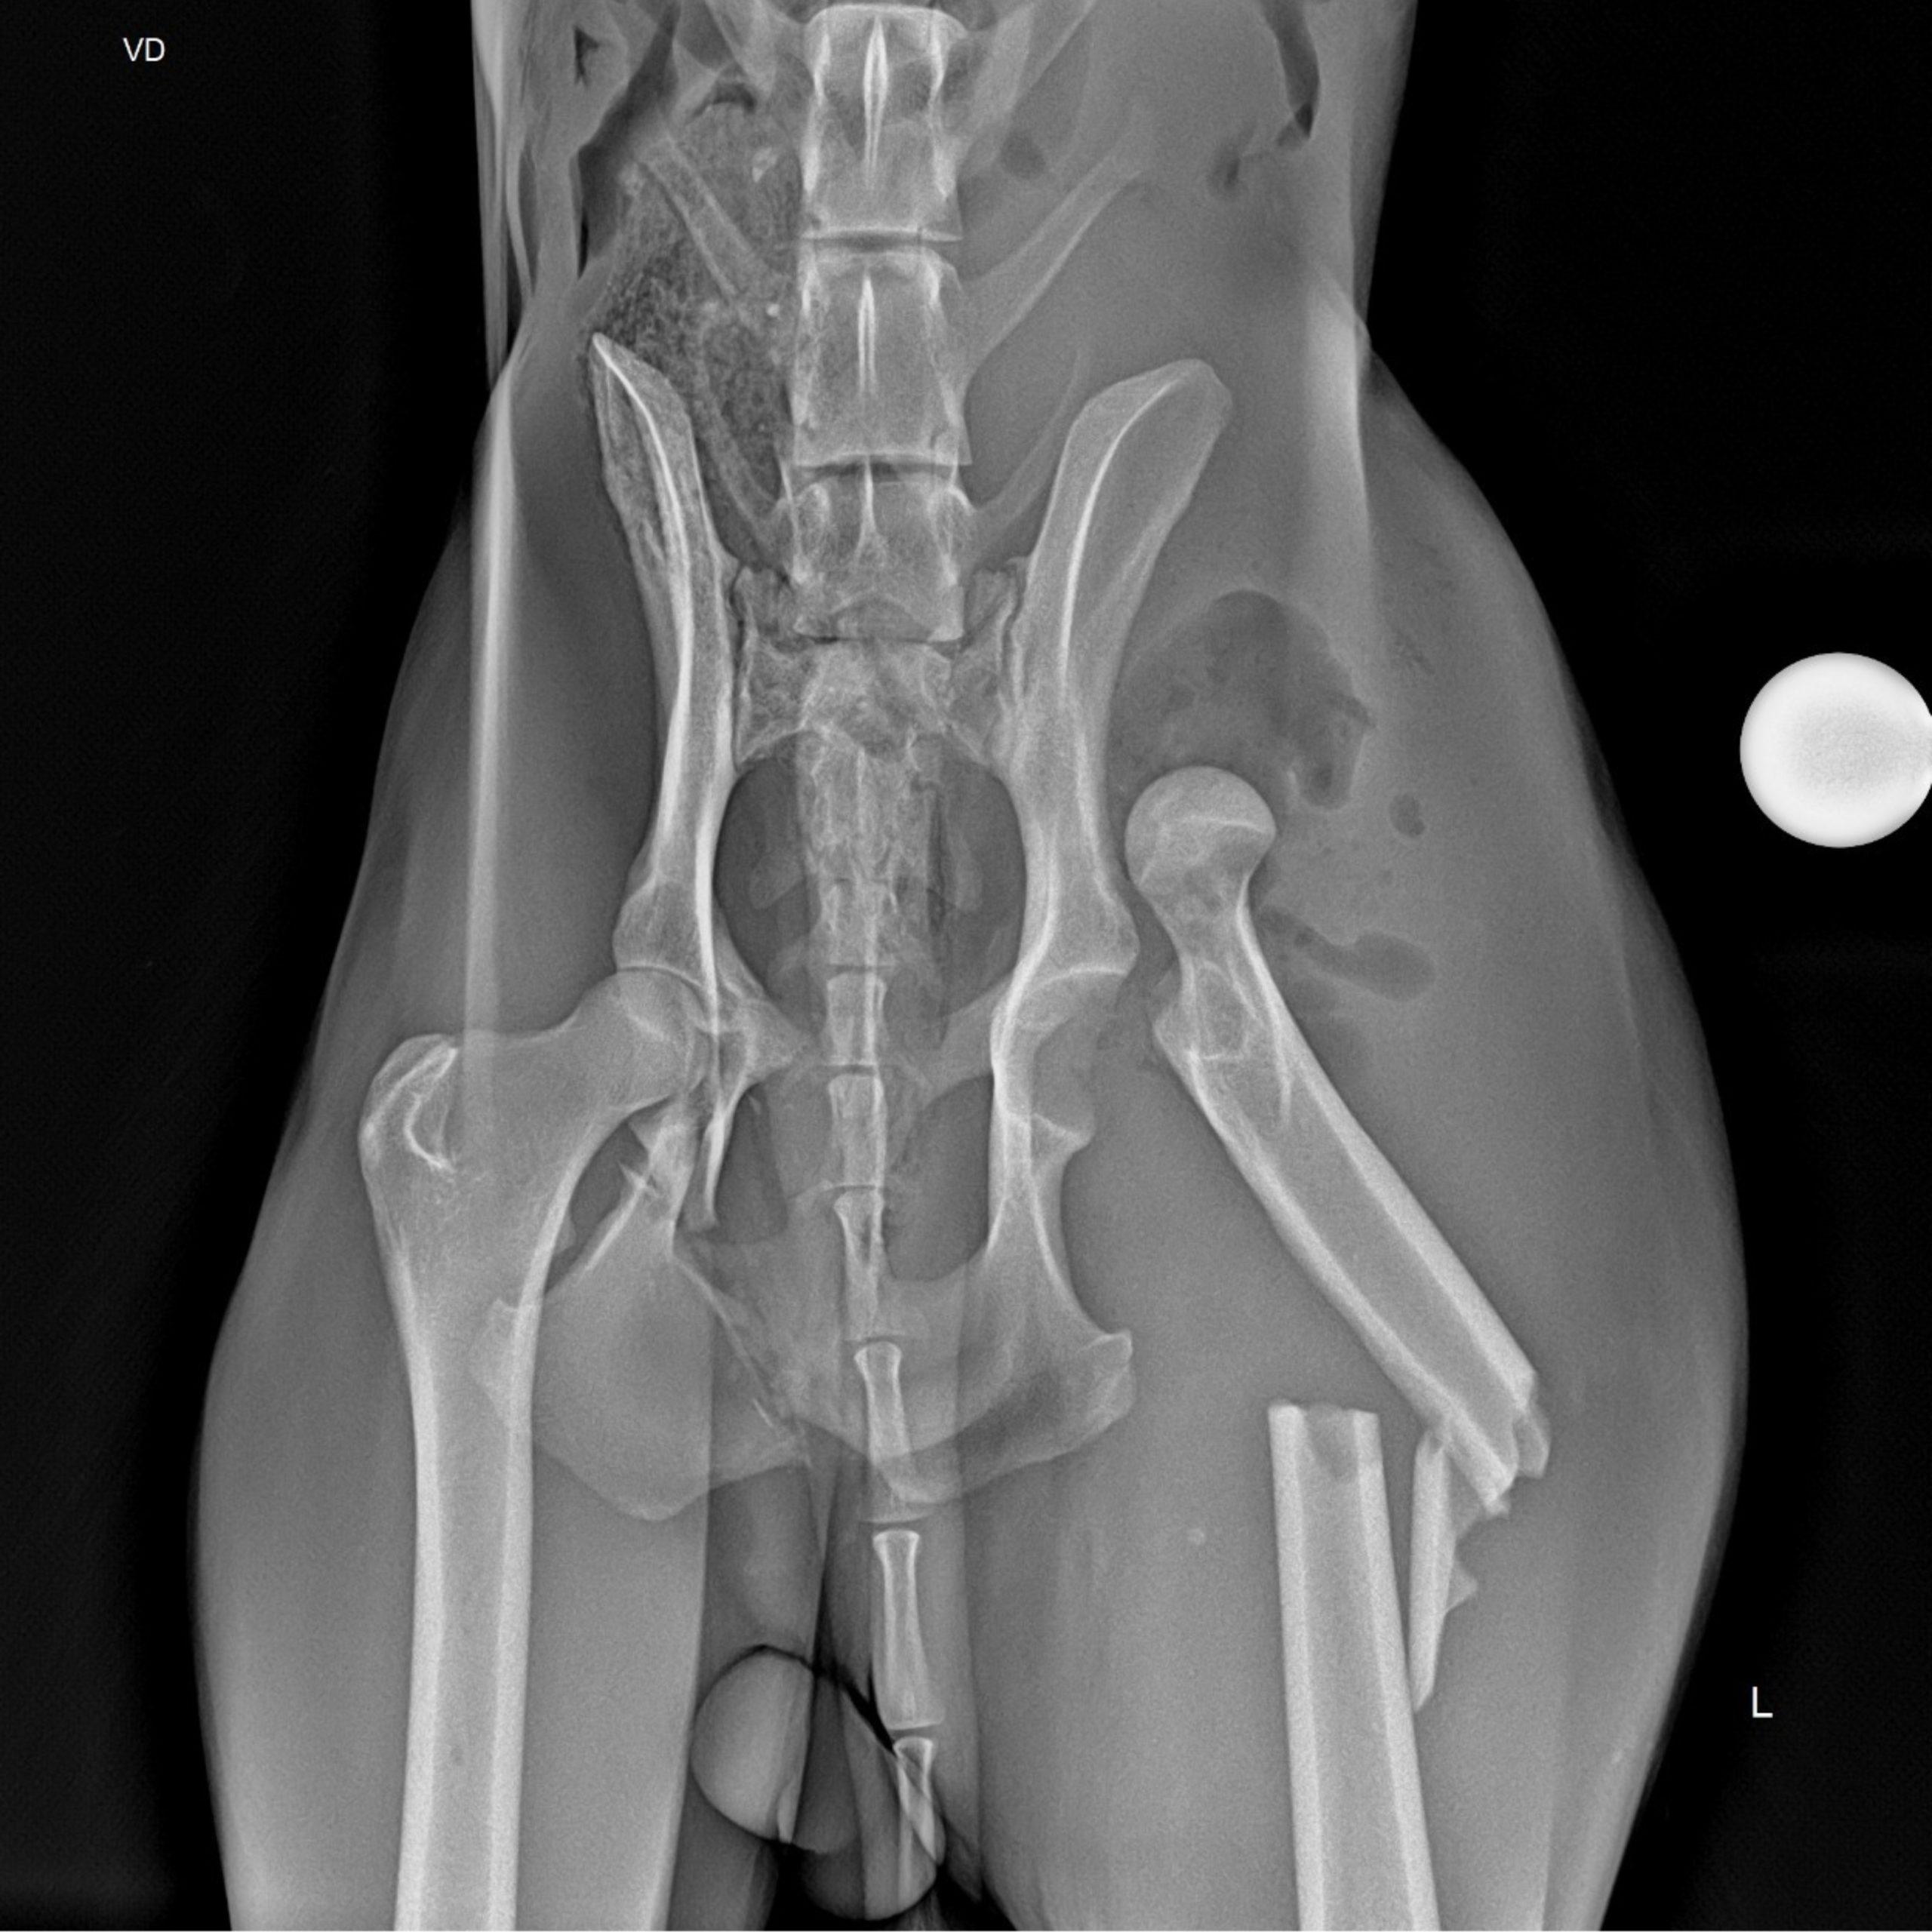  Lobo-guará teve luxação e fratura de fêmur, possível resultado de um atropelamento. (Foto: IAT) 